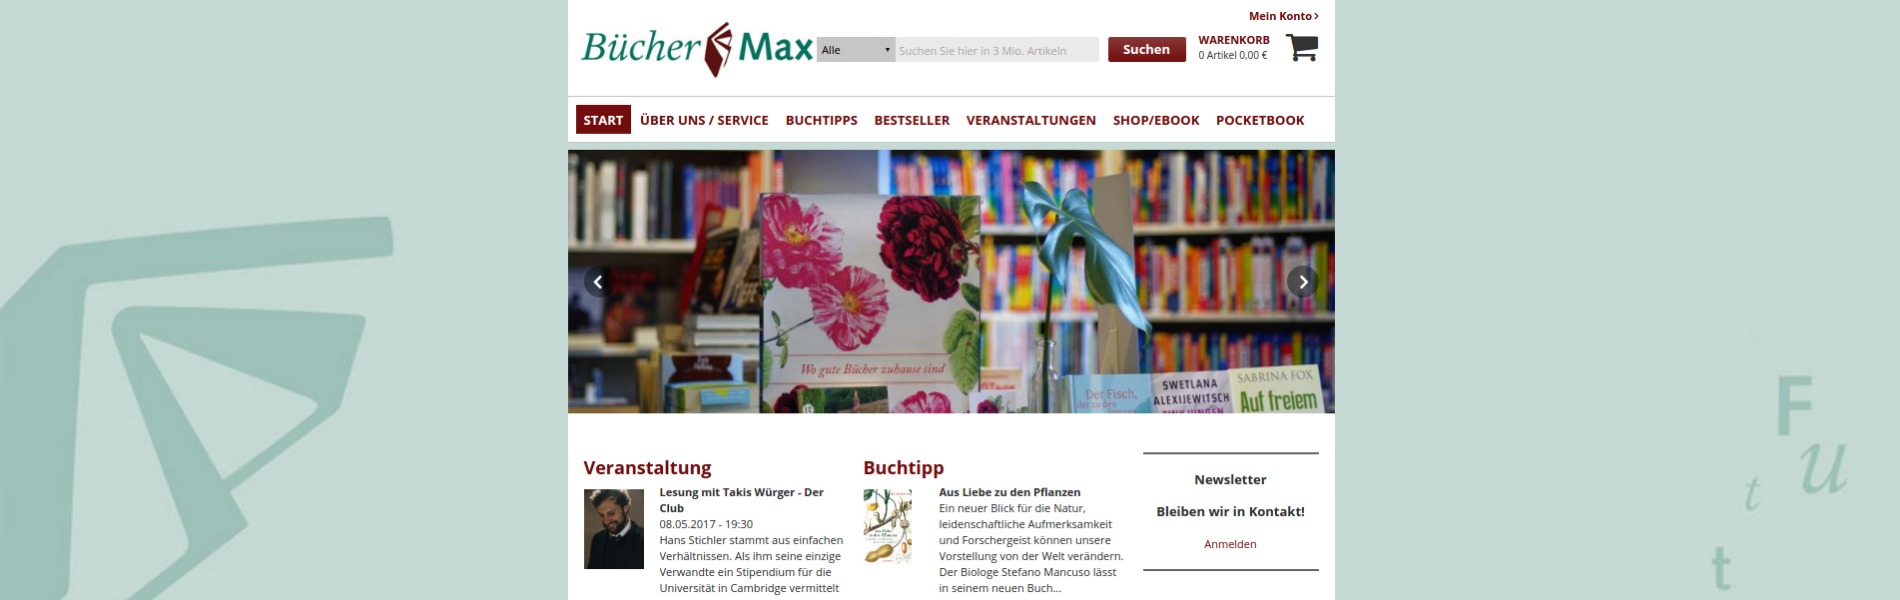 Buchhandlung Buecher Max - BUCHHANDELSWEB - Internetauftritt Ihrer Buchhandlung